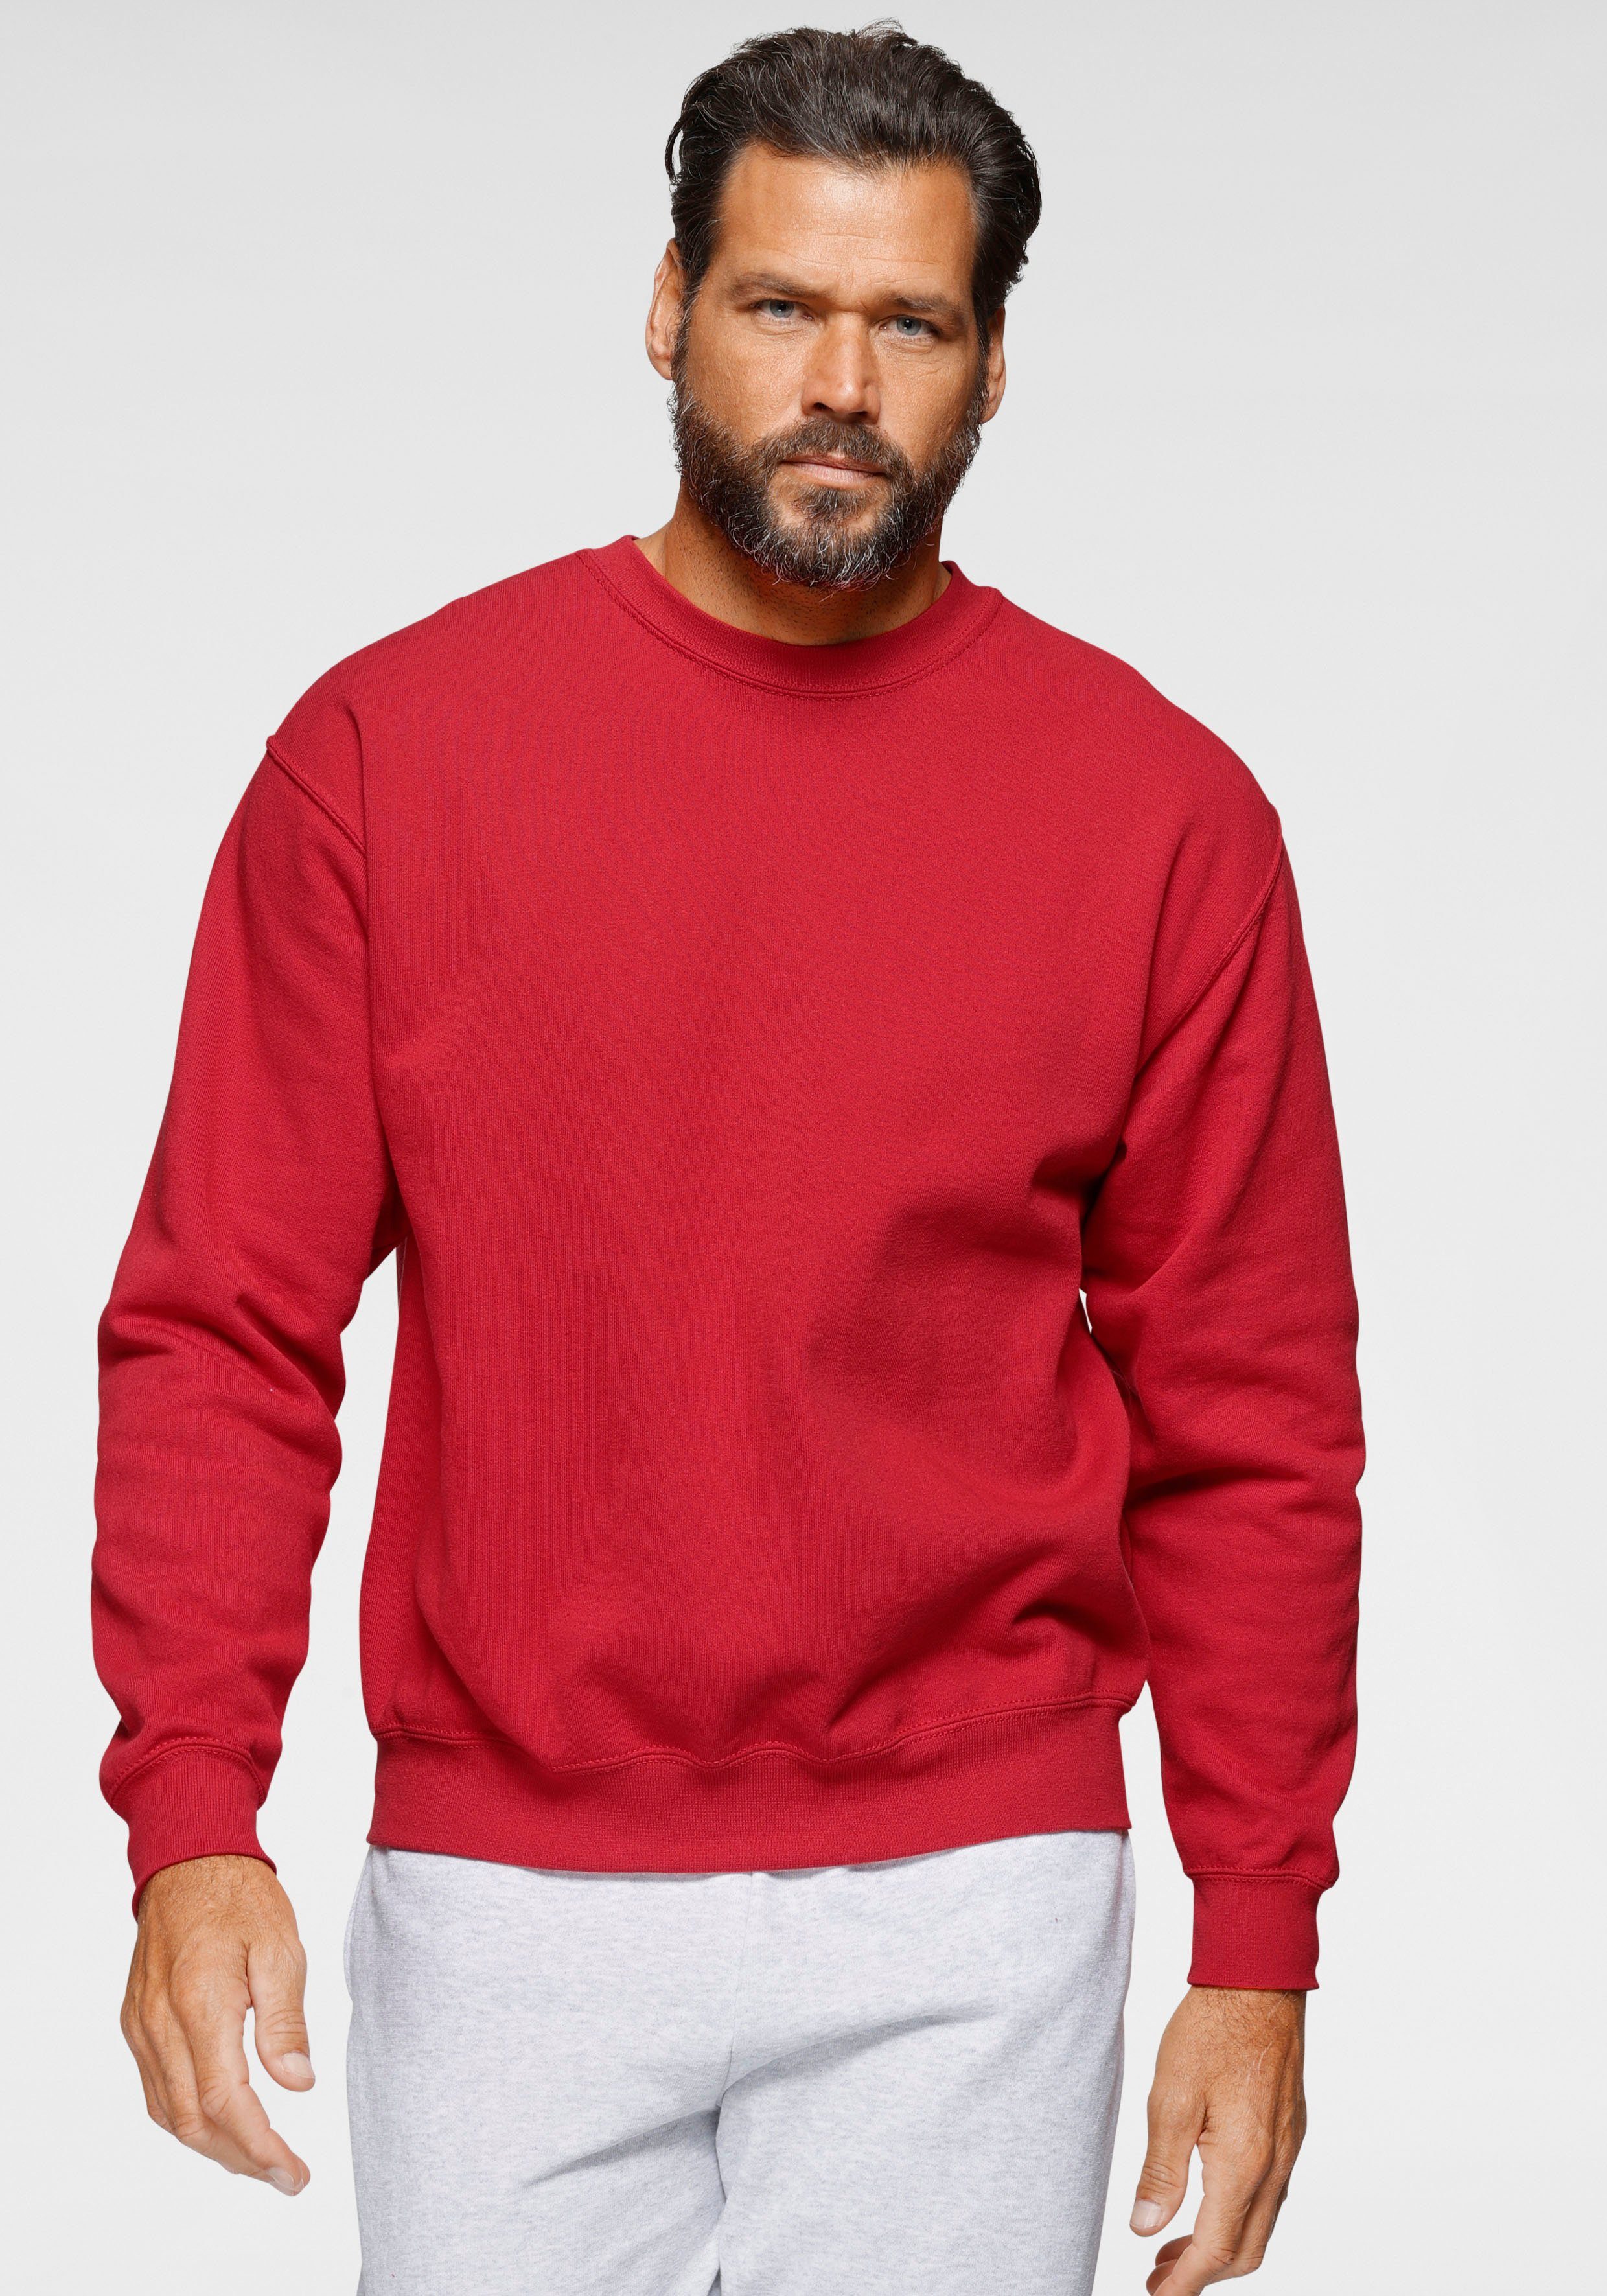 Rote Herren-Pullover online kaufen | OTTO